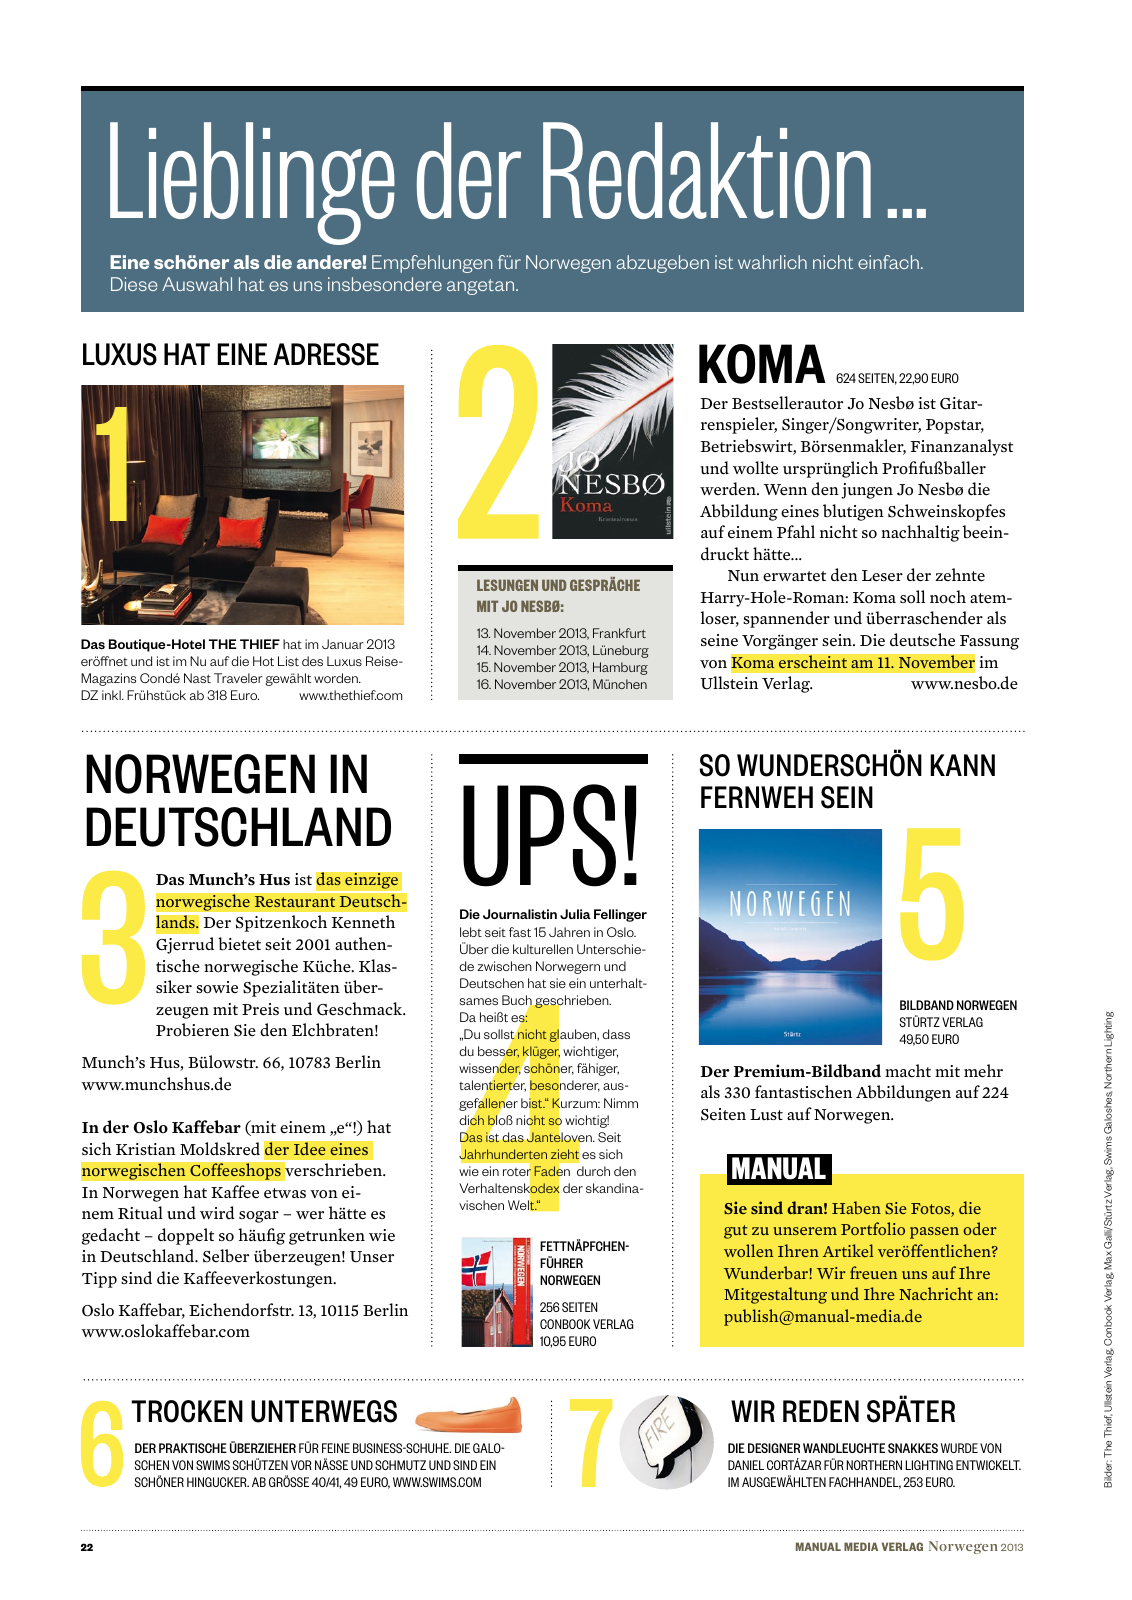 Vorschau MANUAL MEDIA  Norwegen 2013 Seite 22